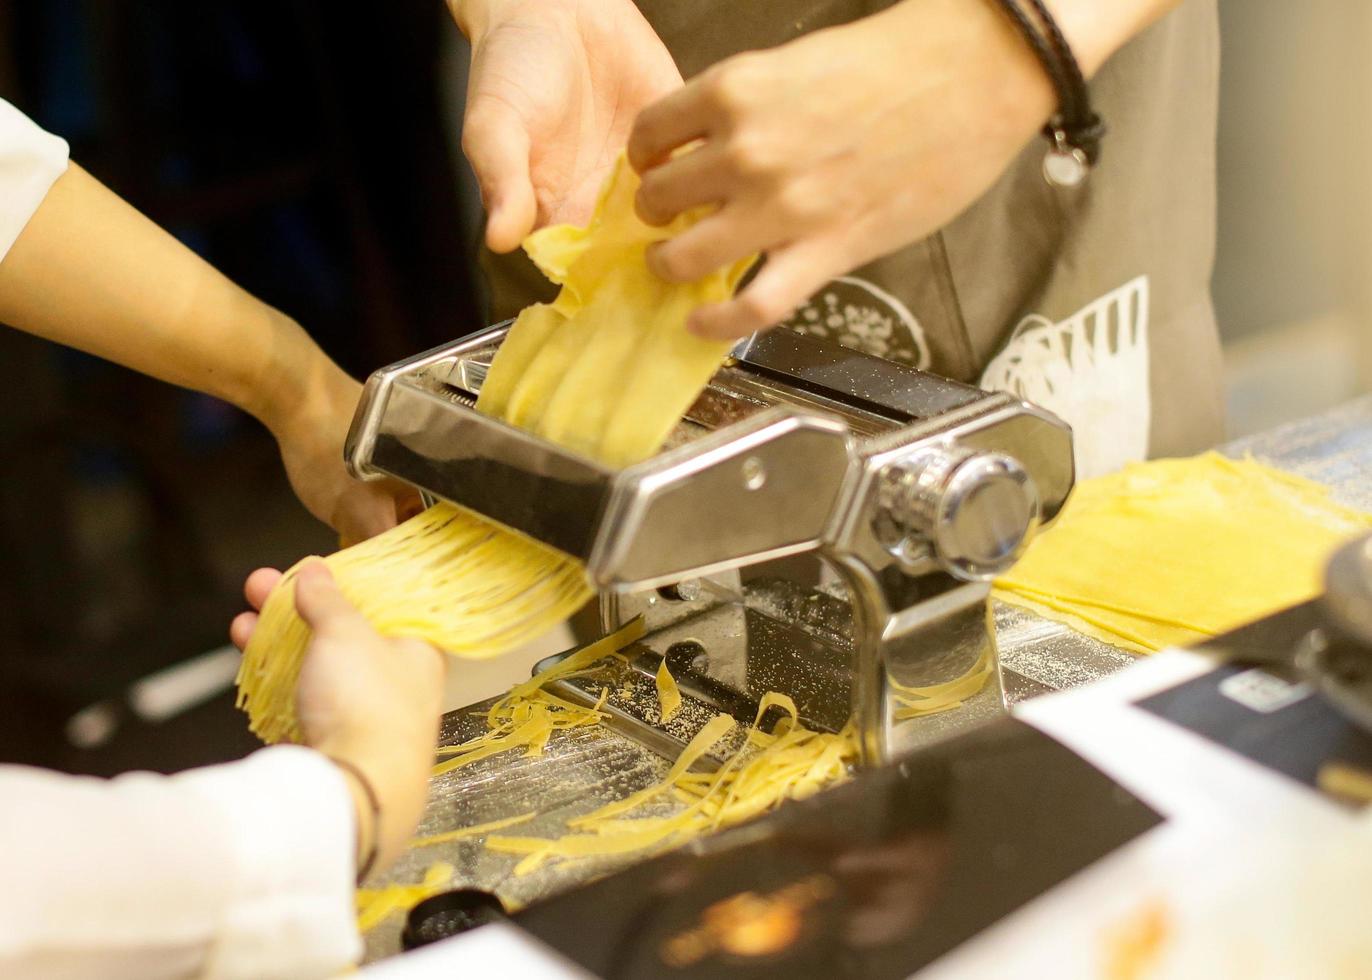 Koch macht Pasta mit einer Maschine, hausgemachte frische Pasta foto